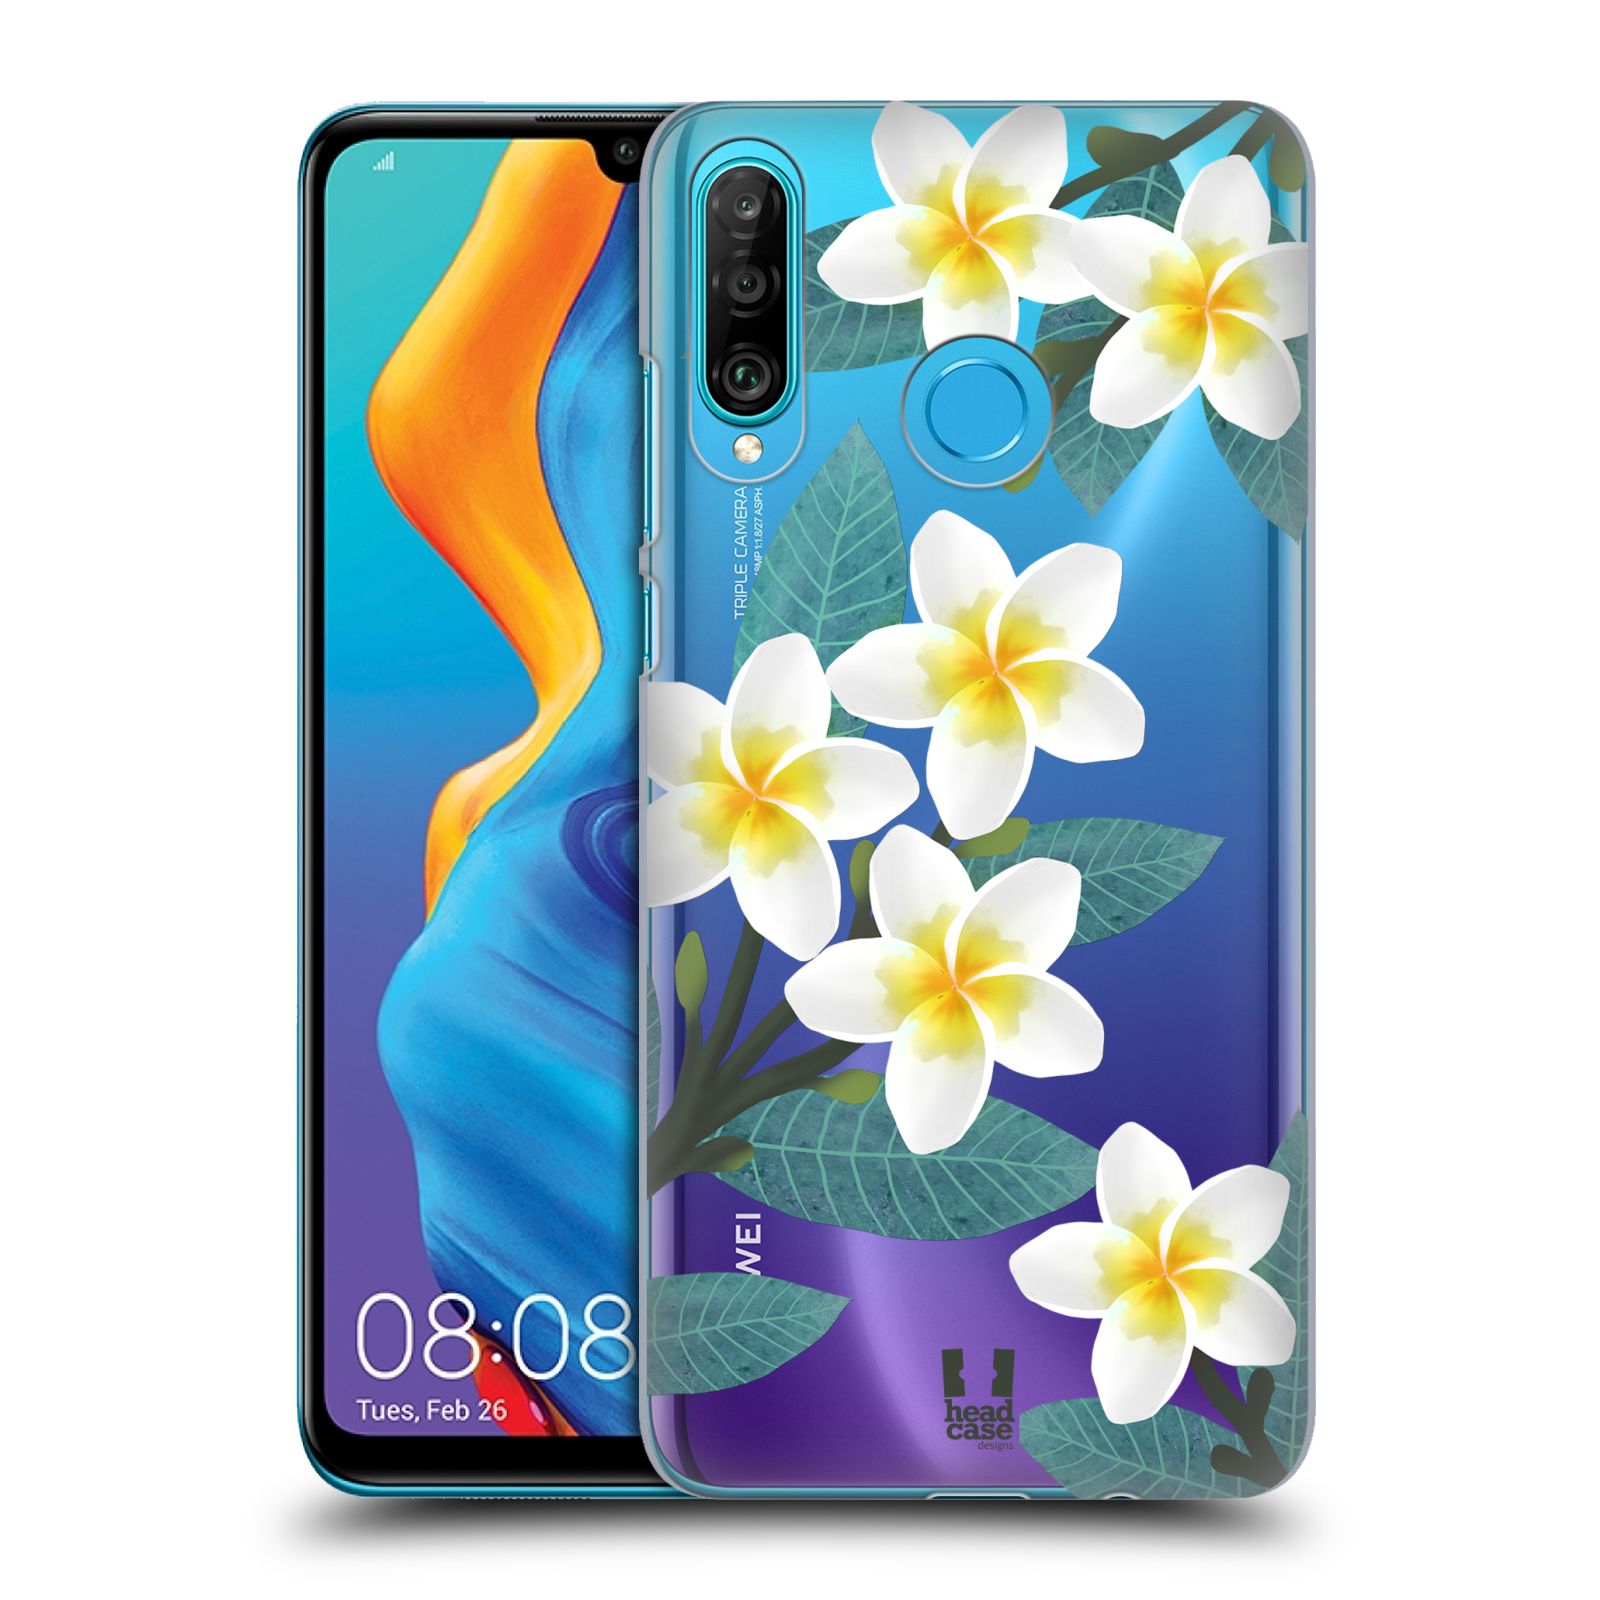 Pouzdro na mobil Huawei P30 LITE - HEAD CASE - květinové vzory Plumérie